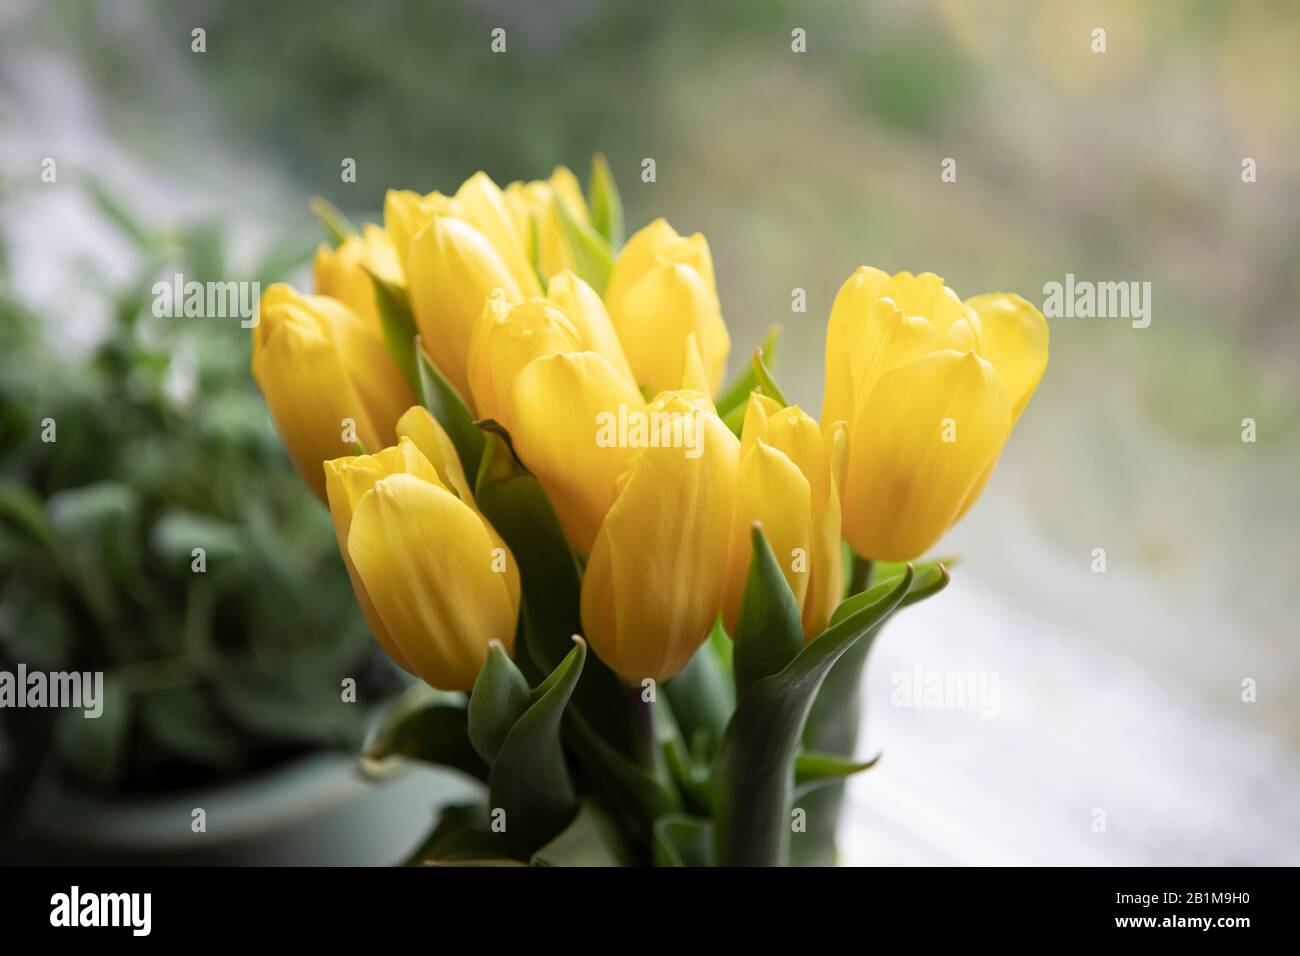 Stimmung im Frühling. Gelbe Tulpen am Fenster, Hausdekor. Schöner frischer Blumenstrauß. Stockfoto